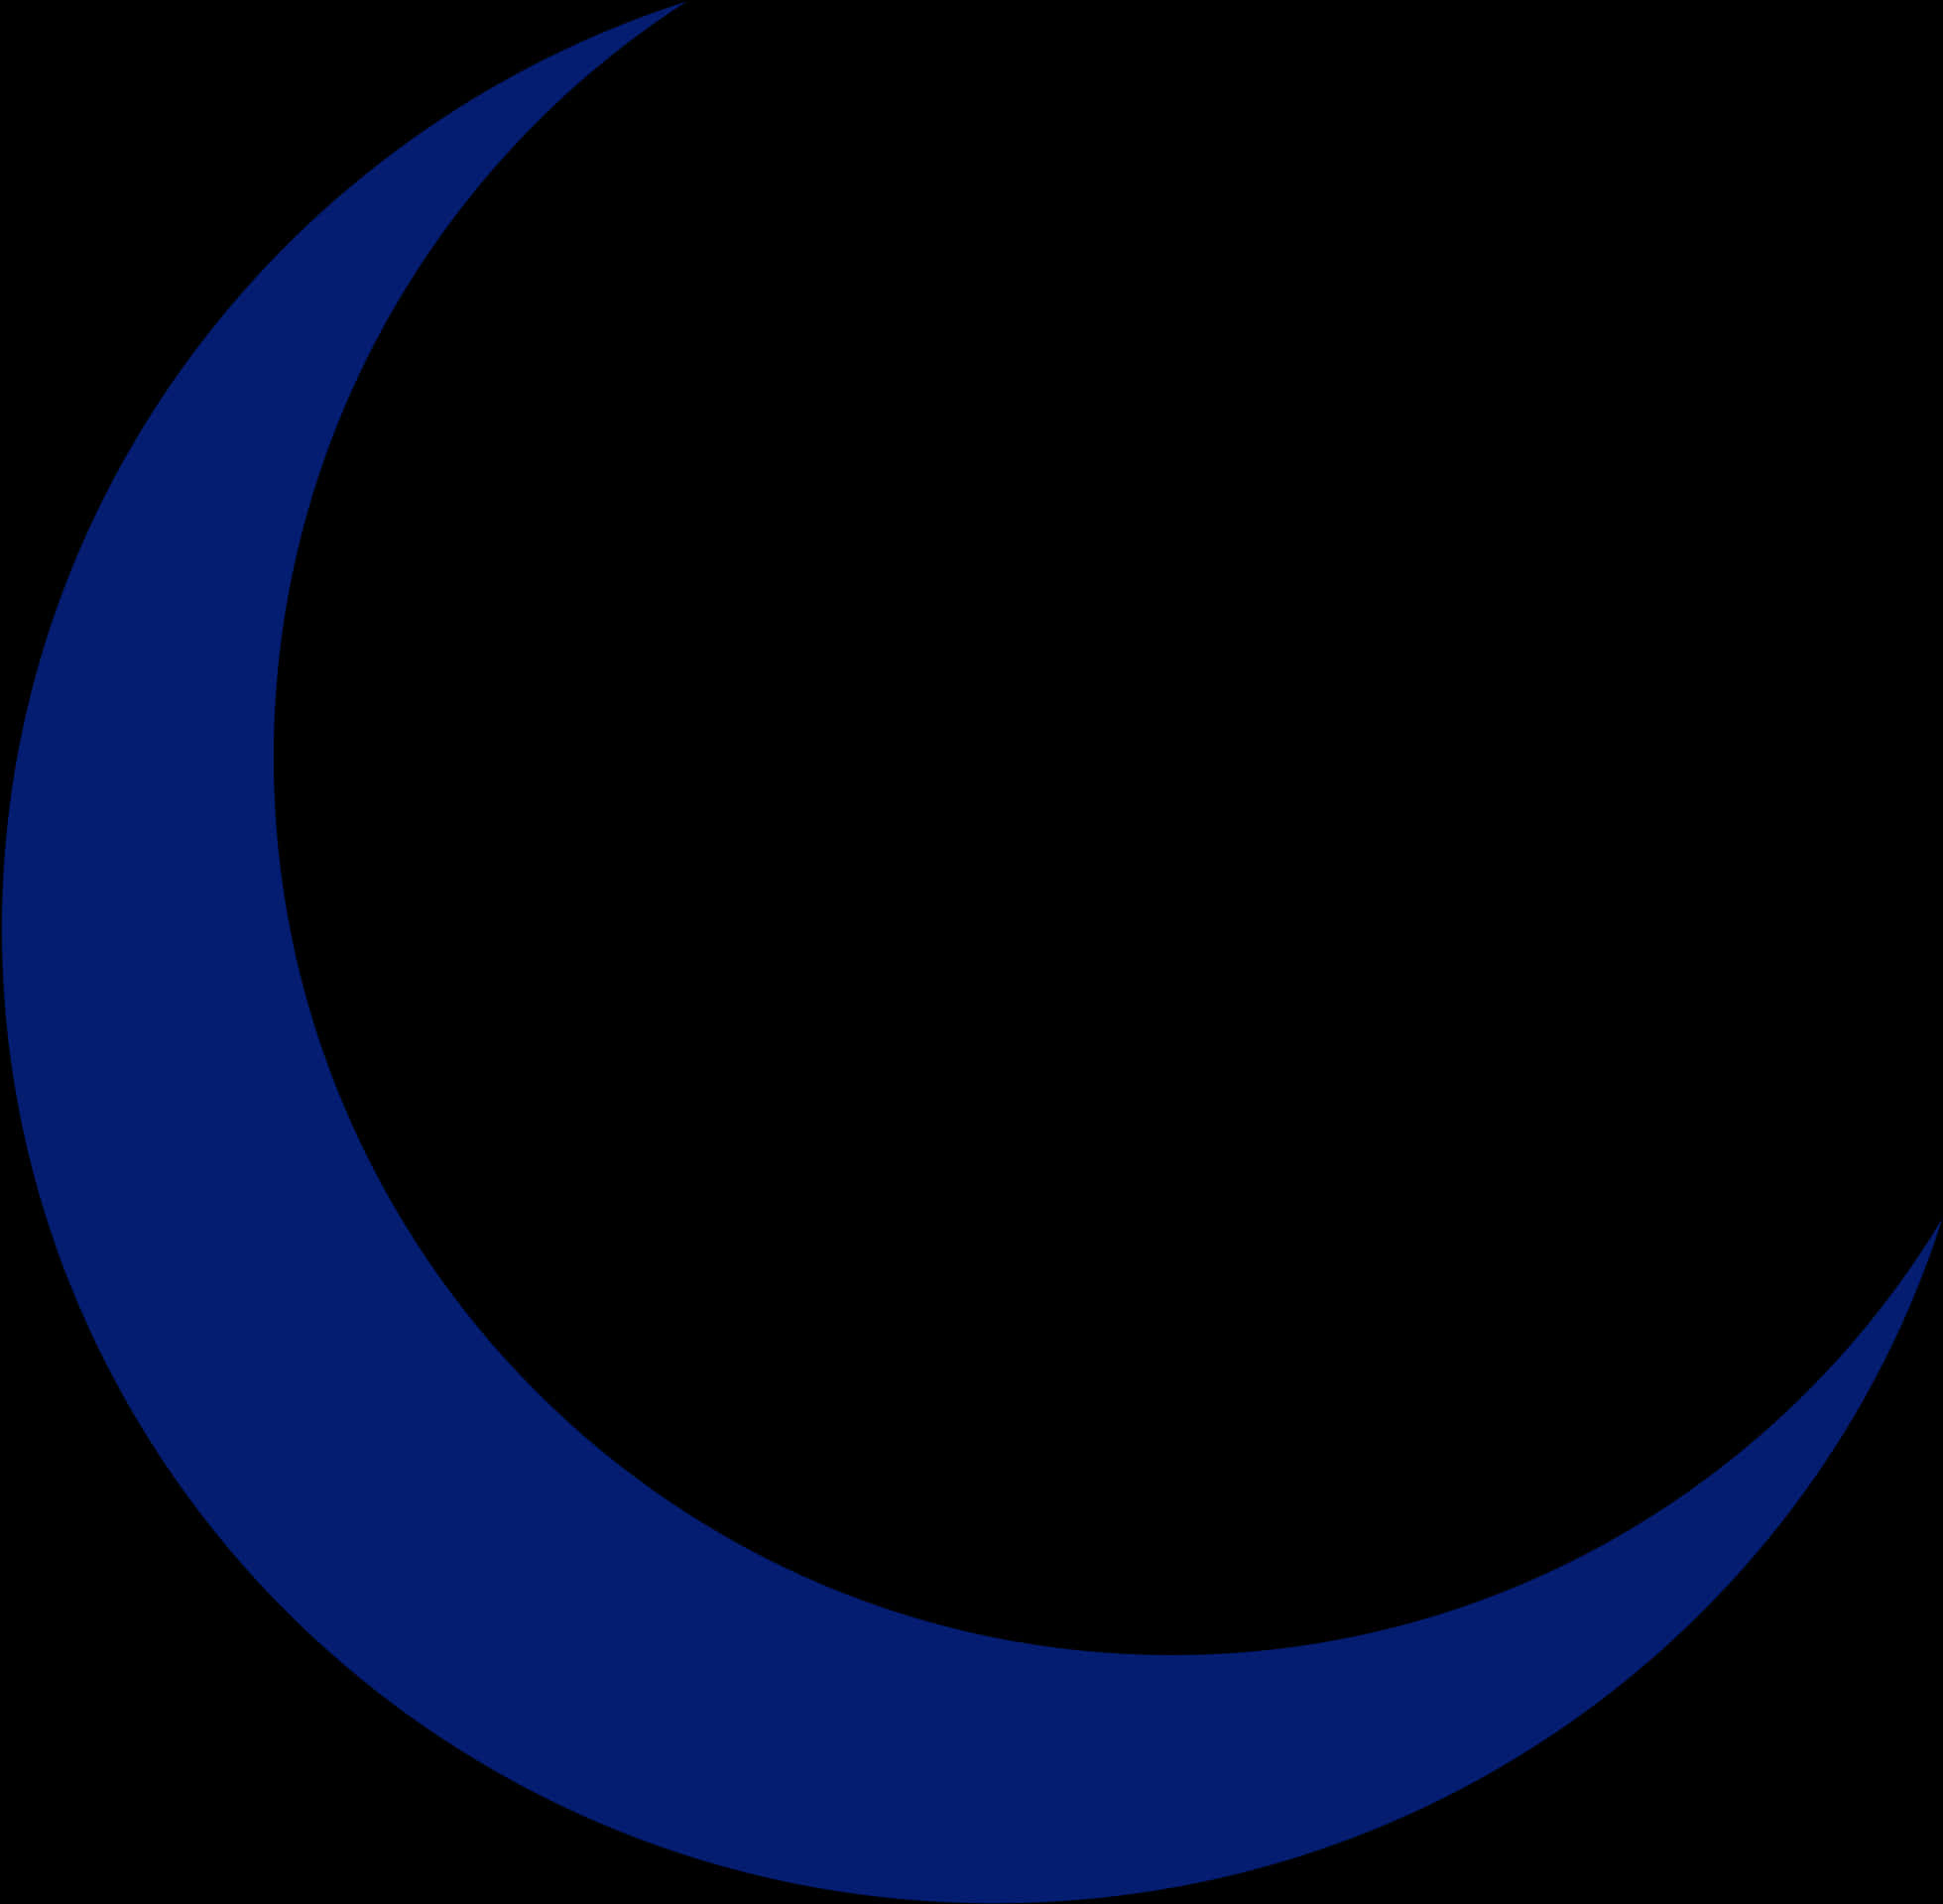 Dark Blue Crescent Moon